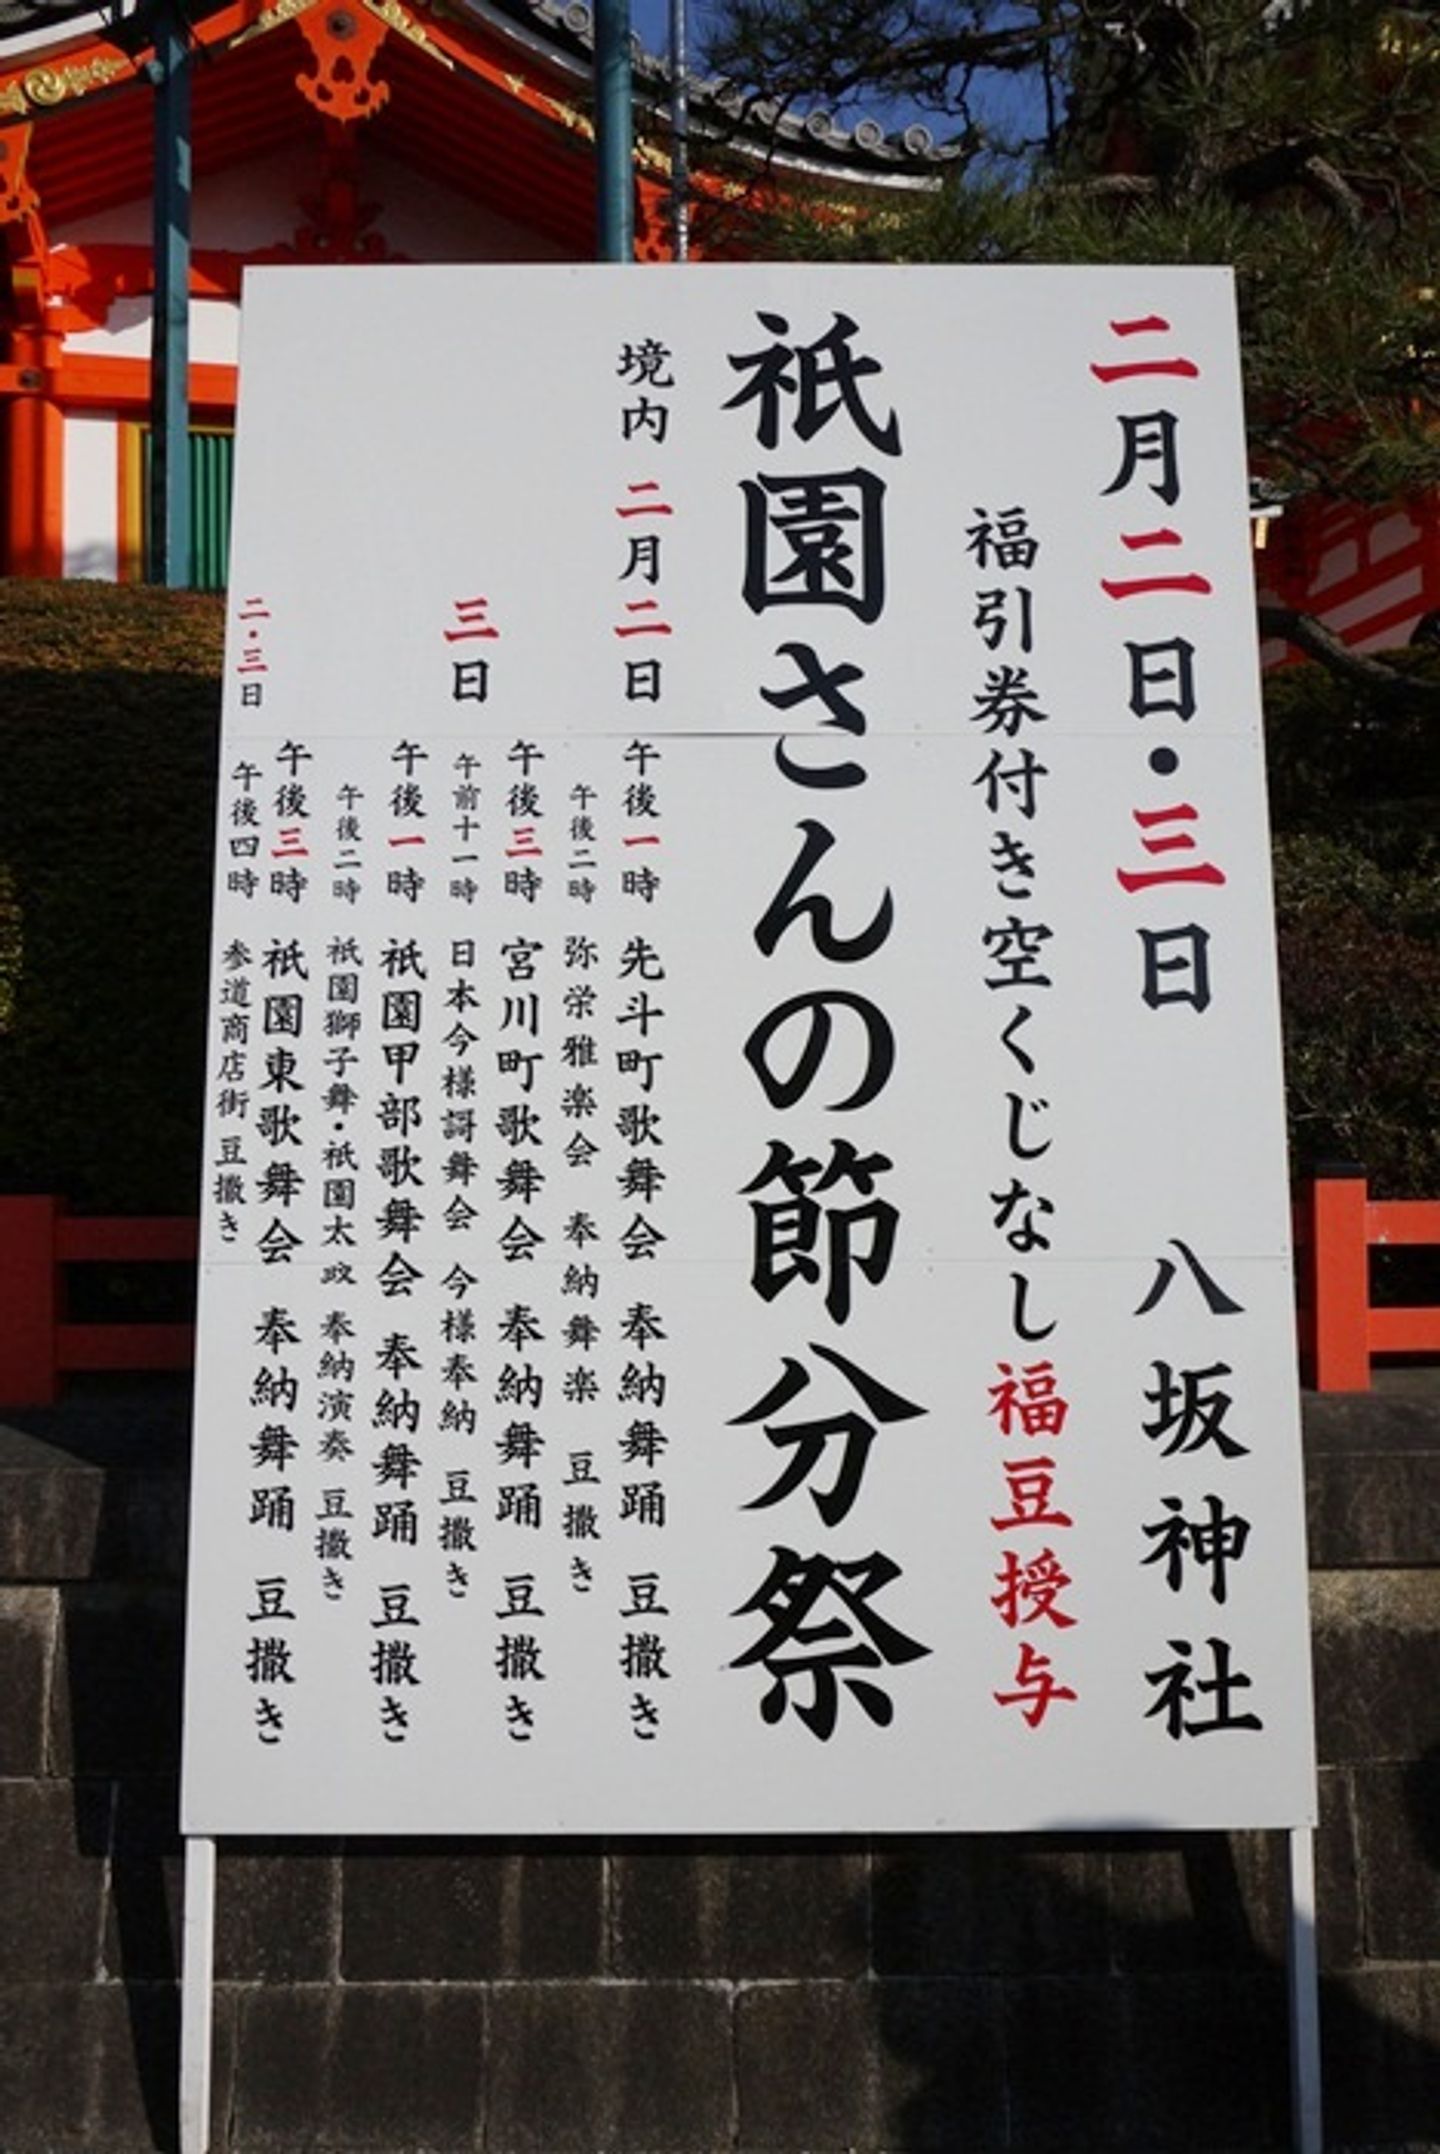 京都 八坂神社節分祭和服日 日本 關西 旅行酒吧